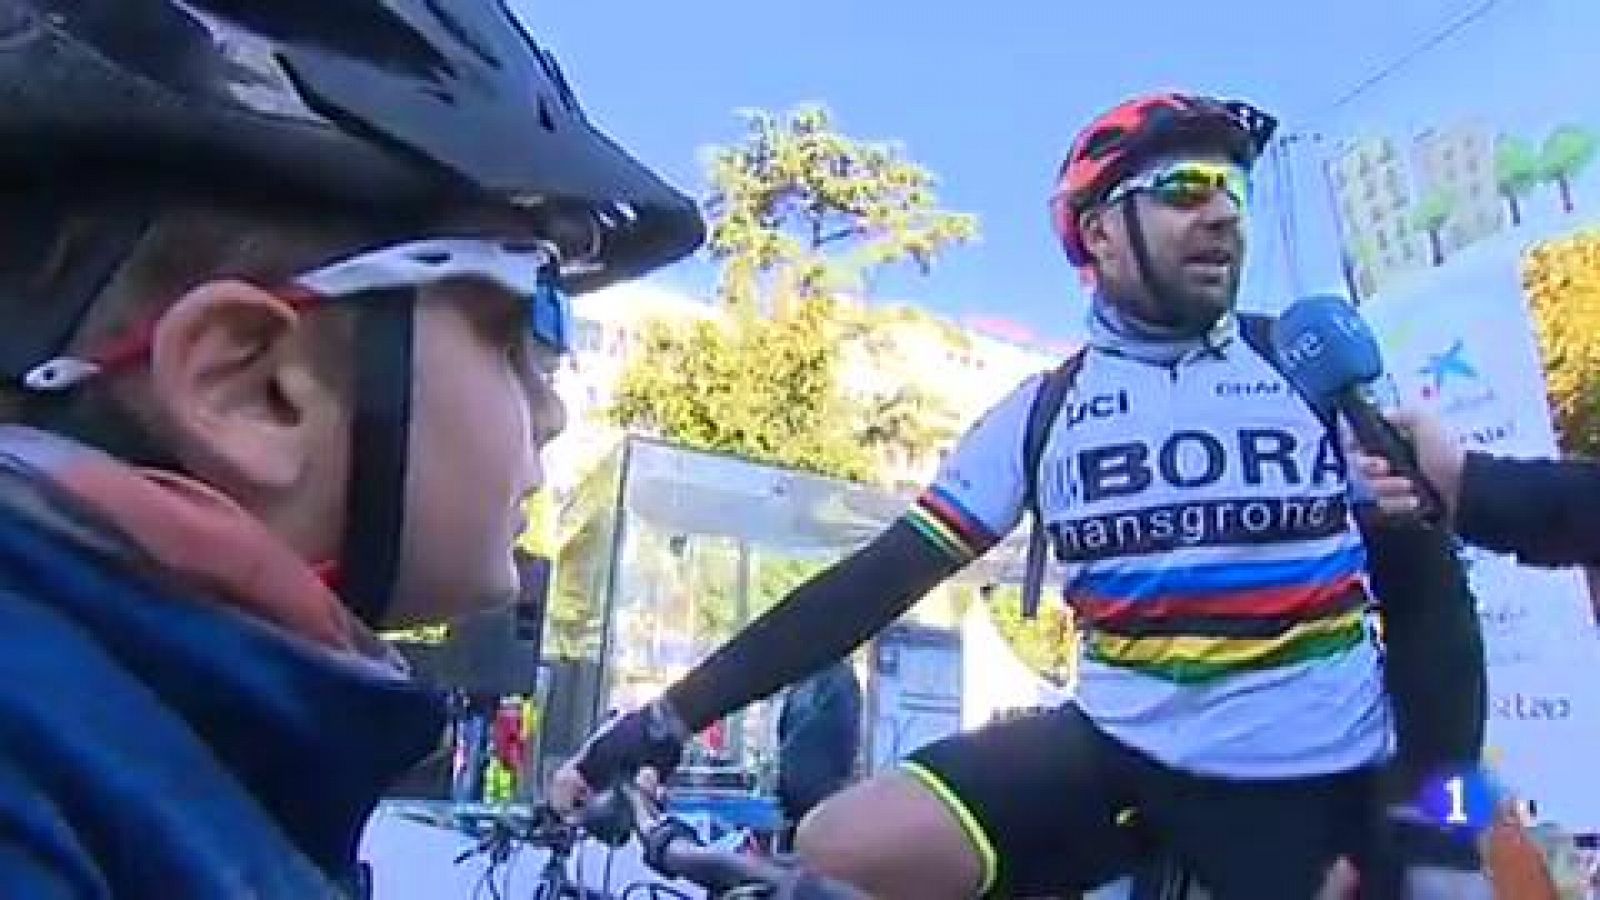 El nuevo campeón del mundo de ciclismo en ruta, Alejandro Valverde, se ha puesto por primera vez el maillot arcoiris. Lo ha hecho en la Fiesta de la Bici de Madrid, rodeado de corredores populares.